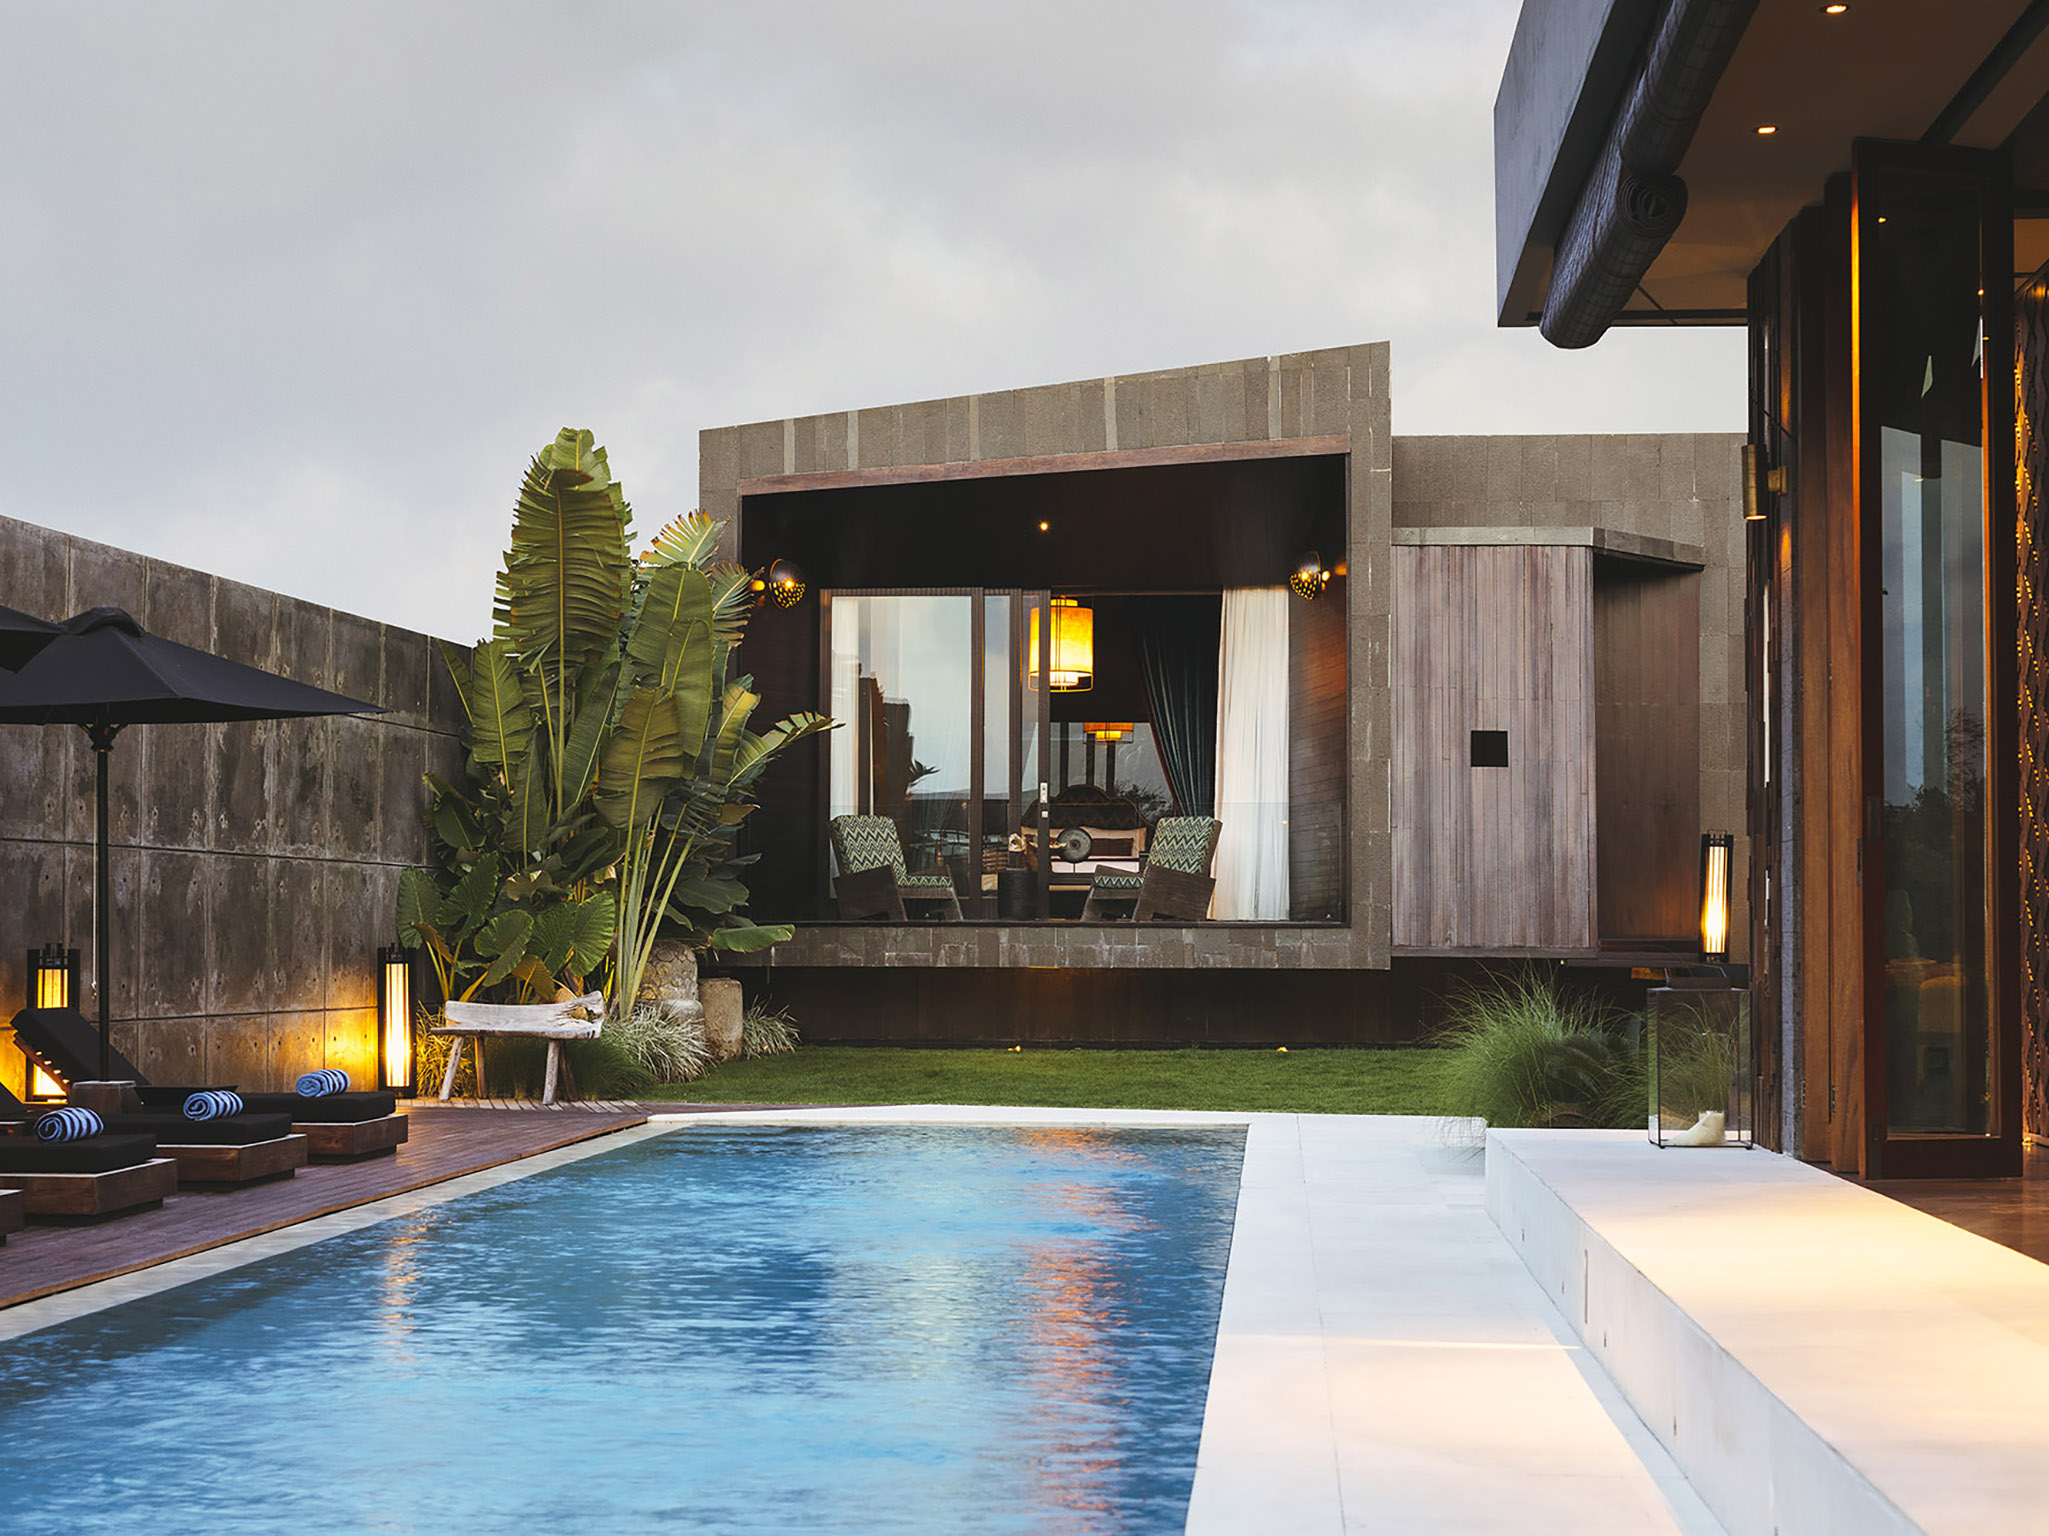 Villa Kayajiwa - Swimming pool and sejoli room feature - Villa Kayajiwa, Canggu, Bali